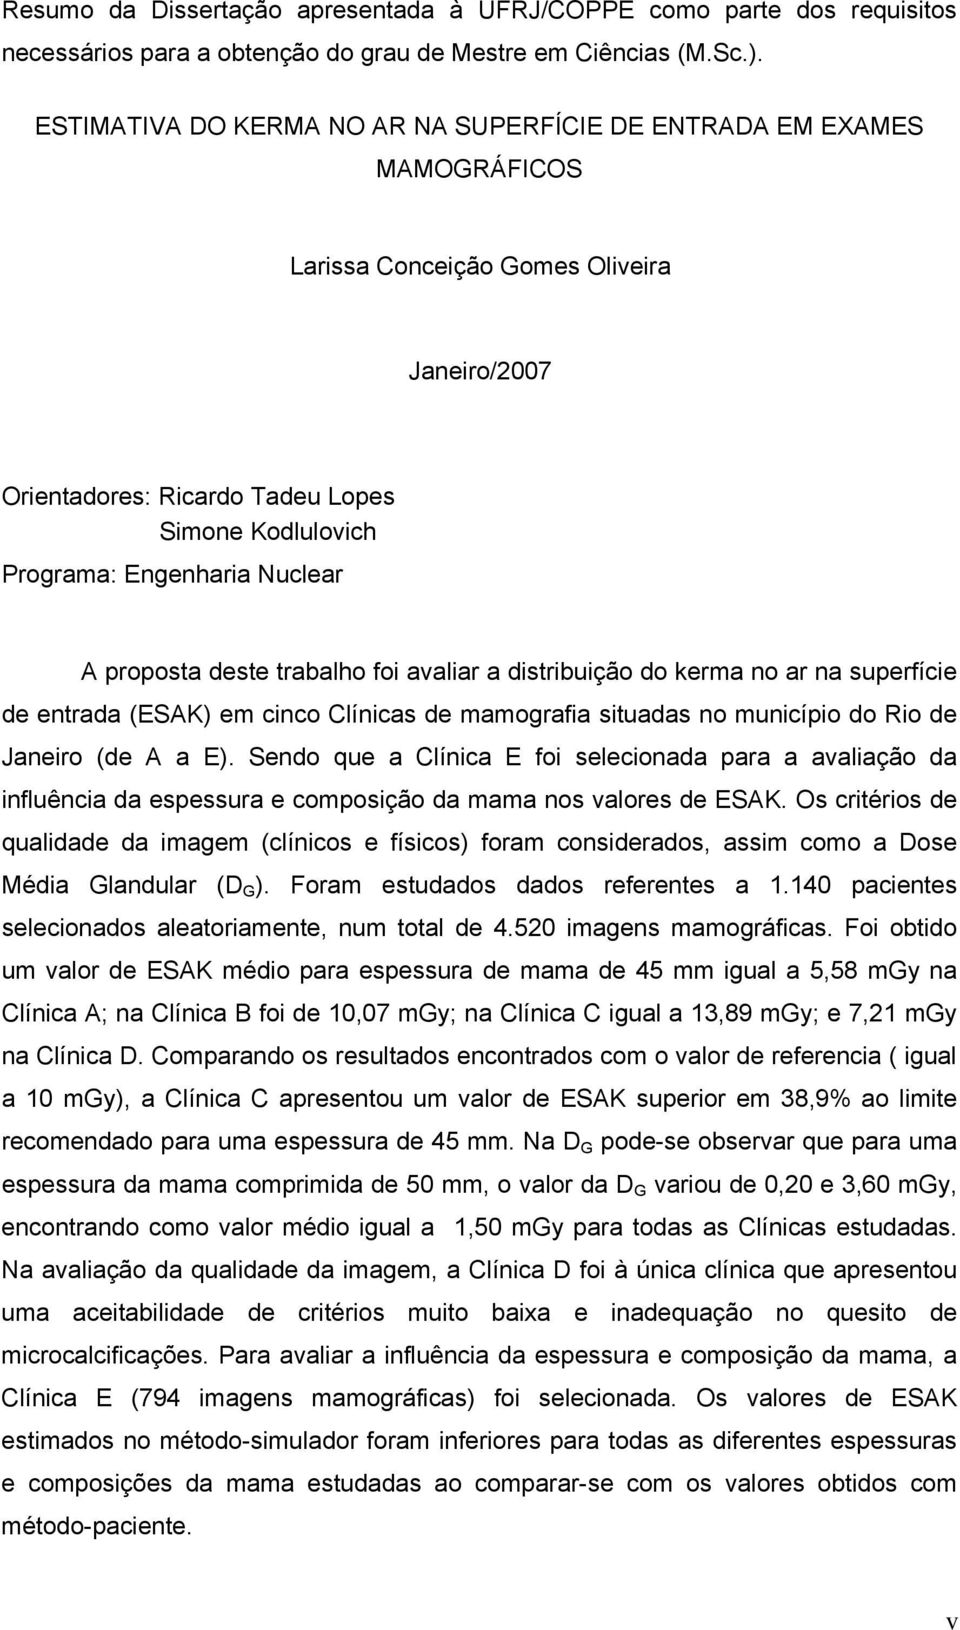 Nuclear A proposta deste trabalho foi avaliar a distribuição do kerma no ar na superfície de entrada (ESAK) em cinco Clínicas de mamografia situadas no município do Rio de Janeiro (de A a E).